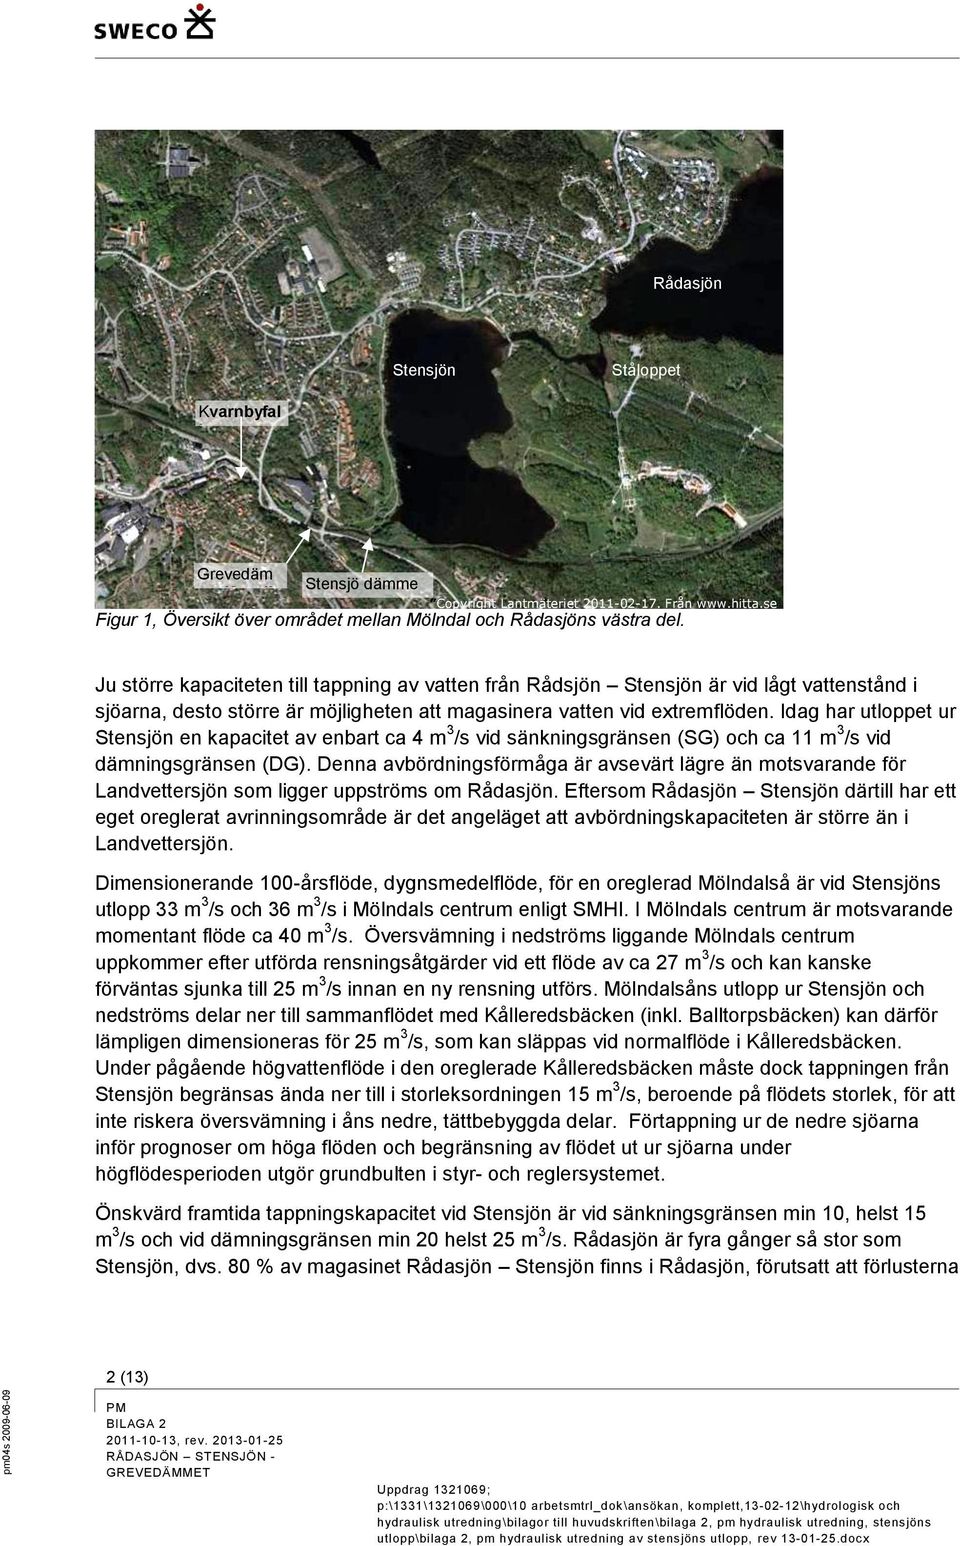 Idag har utloppet ur Stensjön en kapacitet av enbart ca 4 m 3 /s vid sänkningsgränsen (SG) och ca 11 m 3 /s vid dämningsgränsen (DG).